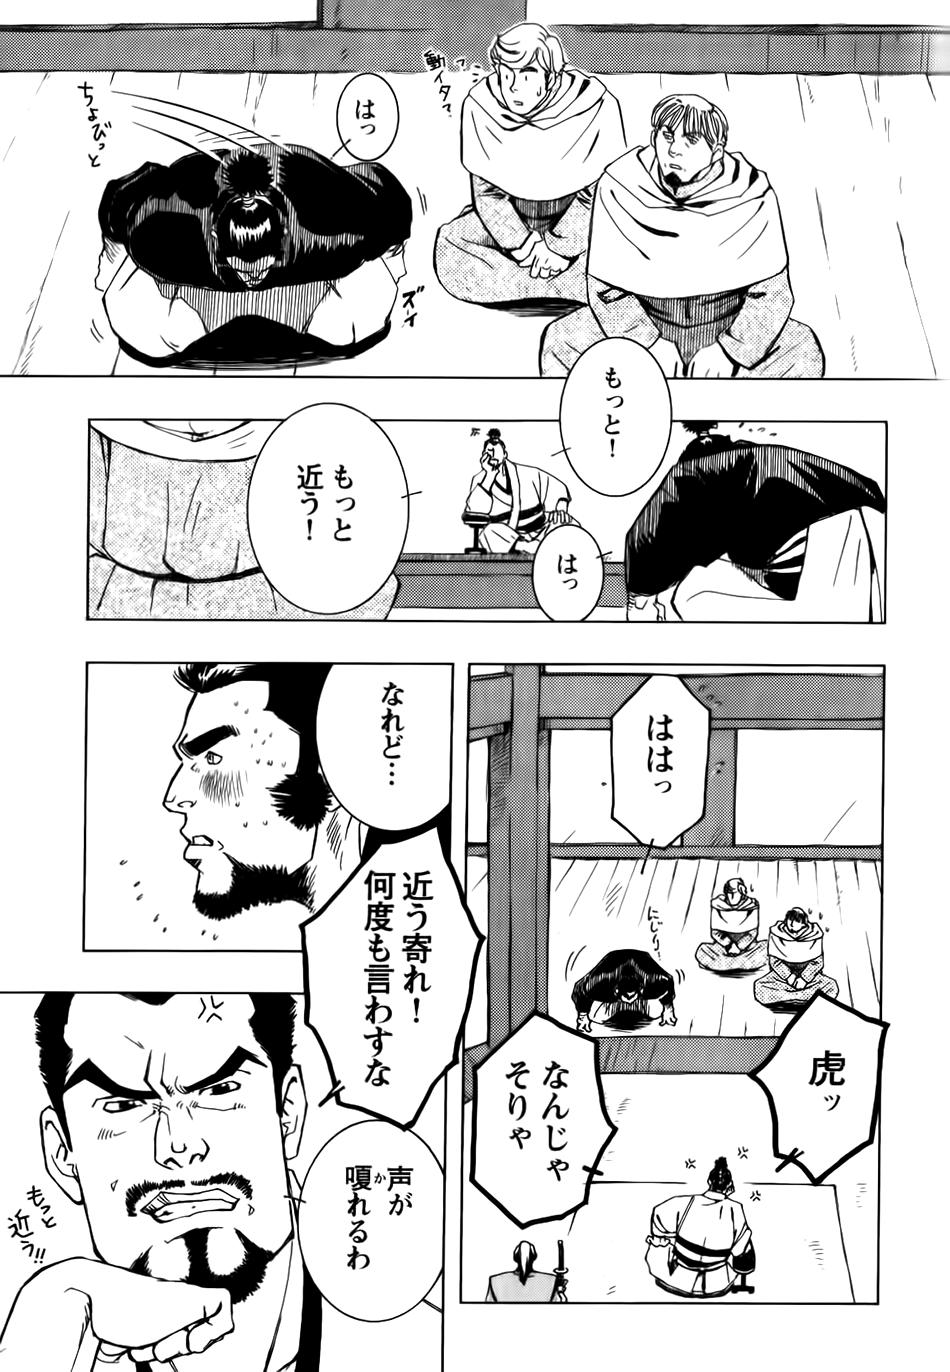 Nobunaga's lotion man 3